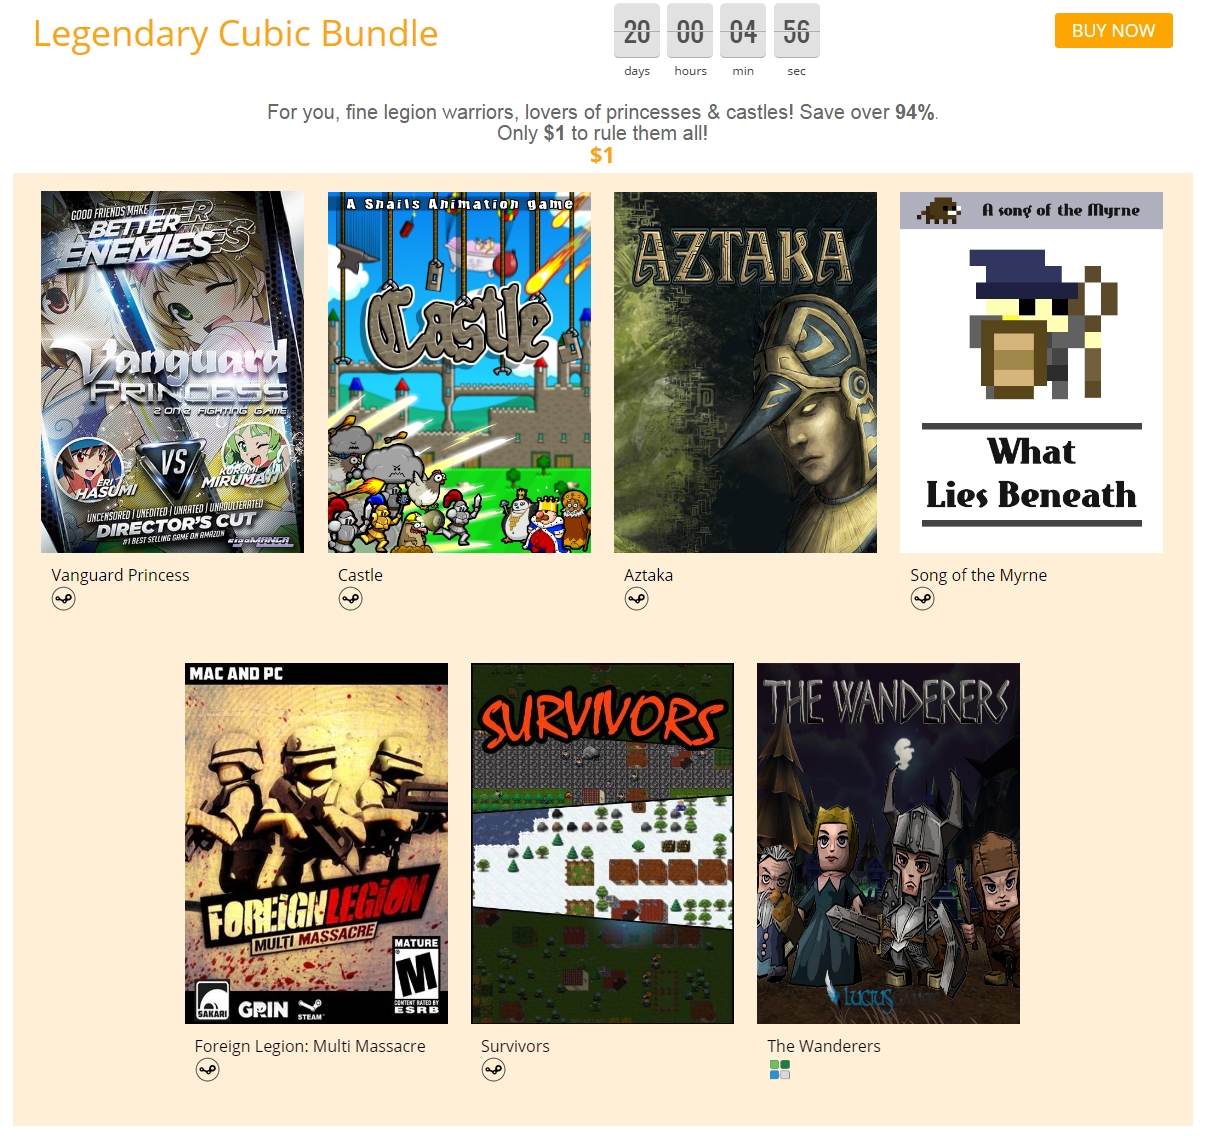 'Legendary Cubic Bundle' - cubicbundle_com_legendary-cubic-bundle - 052.jpg